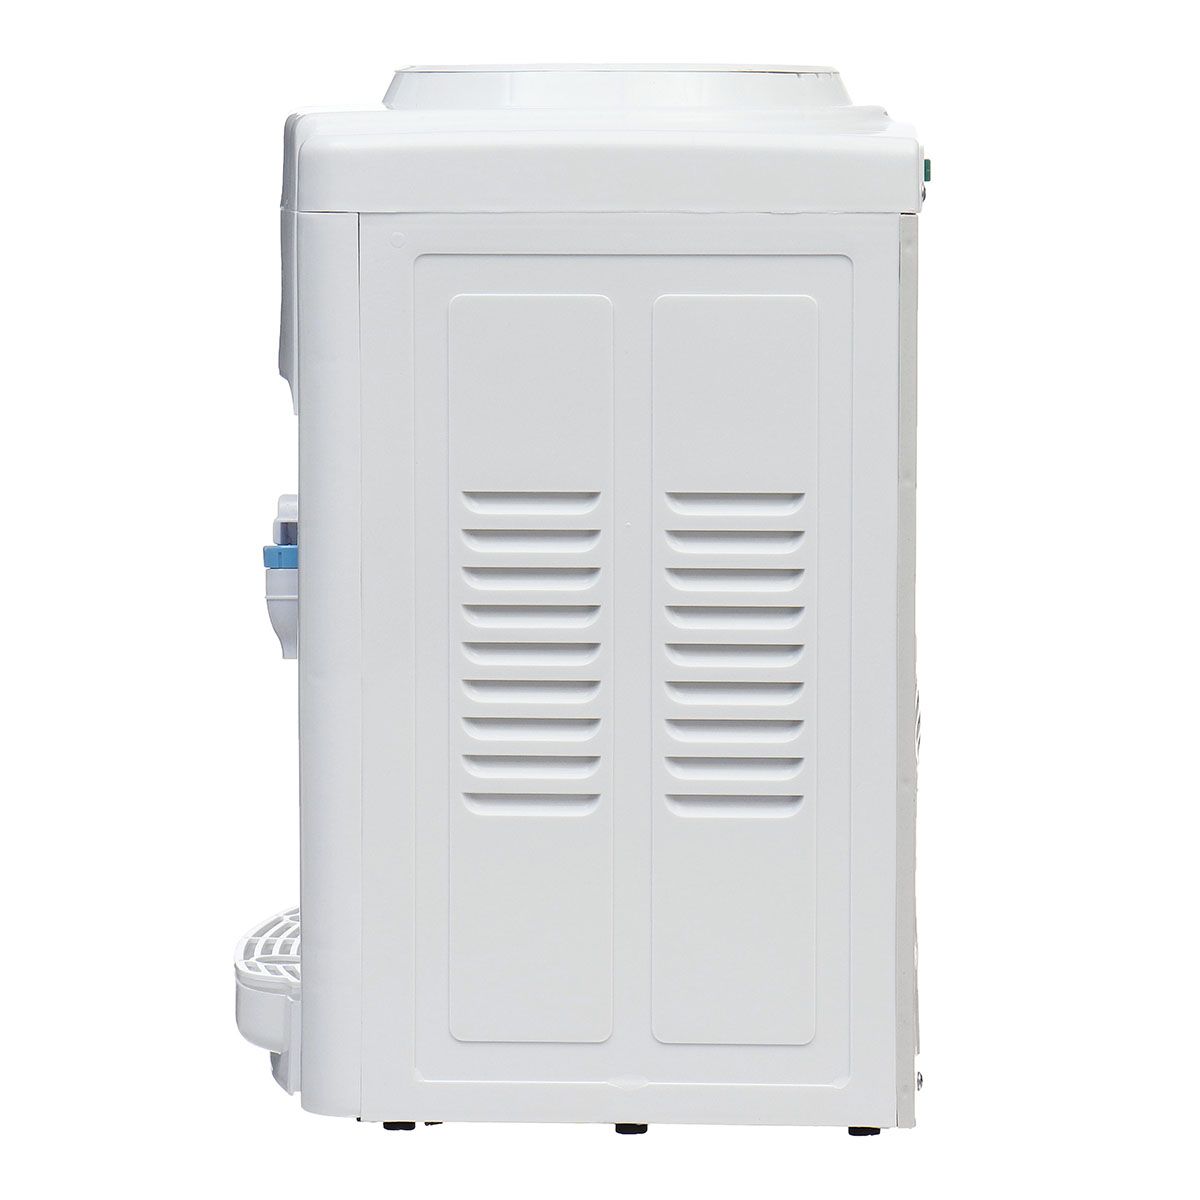 220V-Electric-Cold-Hot-Water-Beverage-Cooler-Dispenser-3-5-Gallon-Home-Office-Use-Desktop-1617196